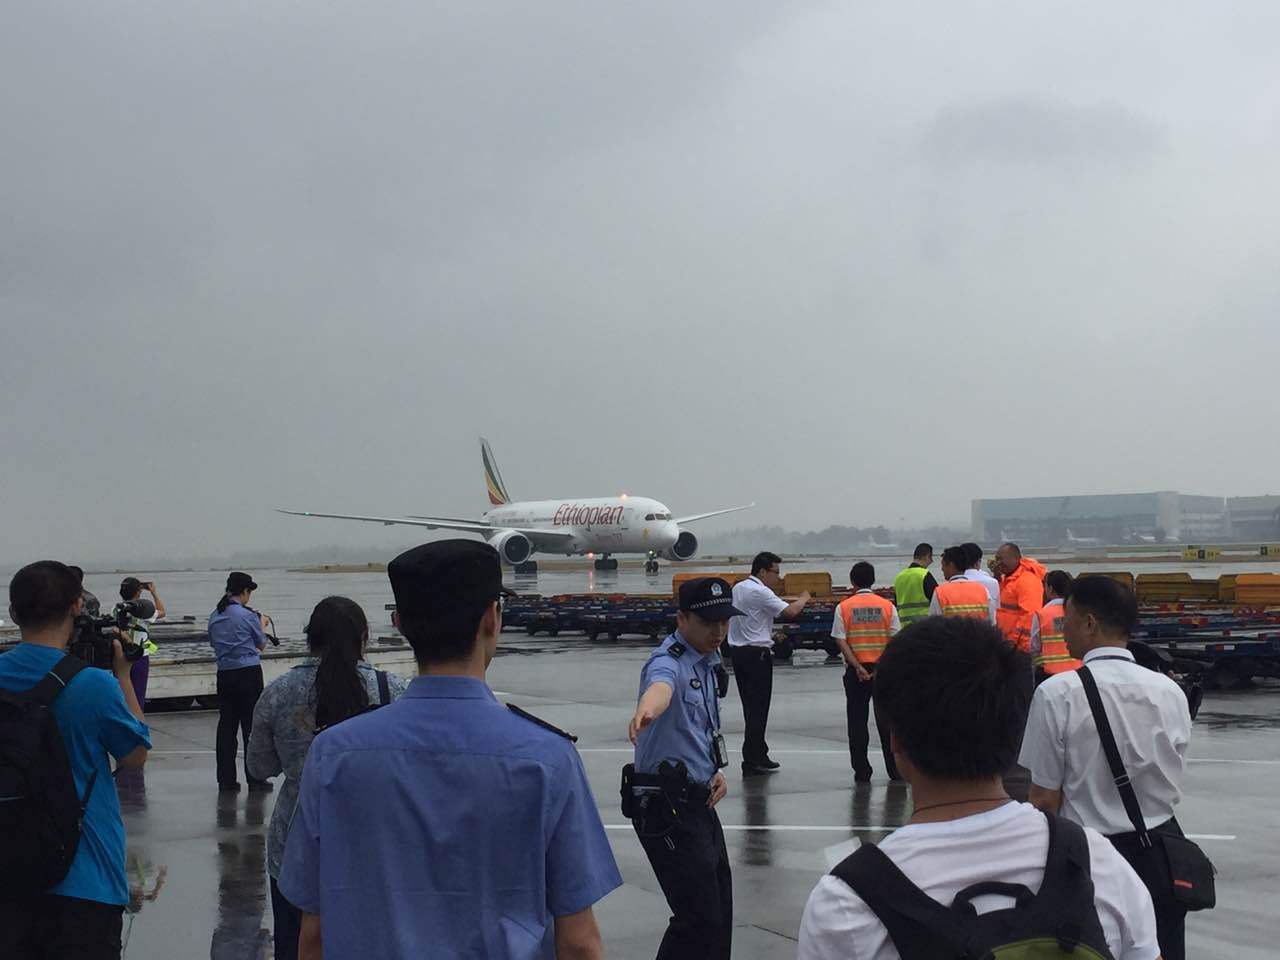 埃航航班飞抵双流国际机场 消防车为首航飞机